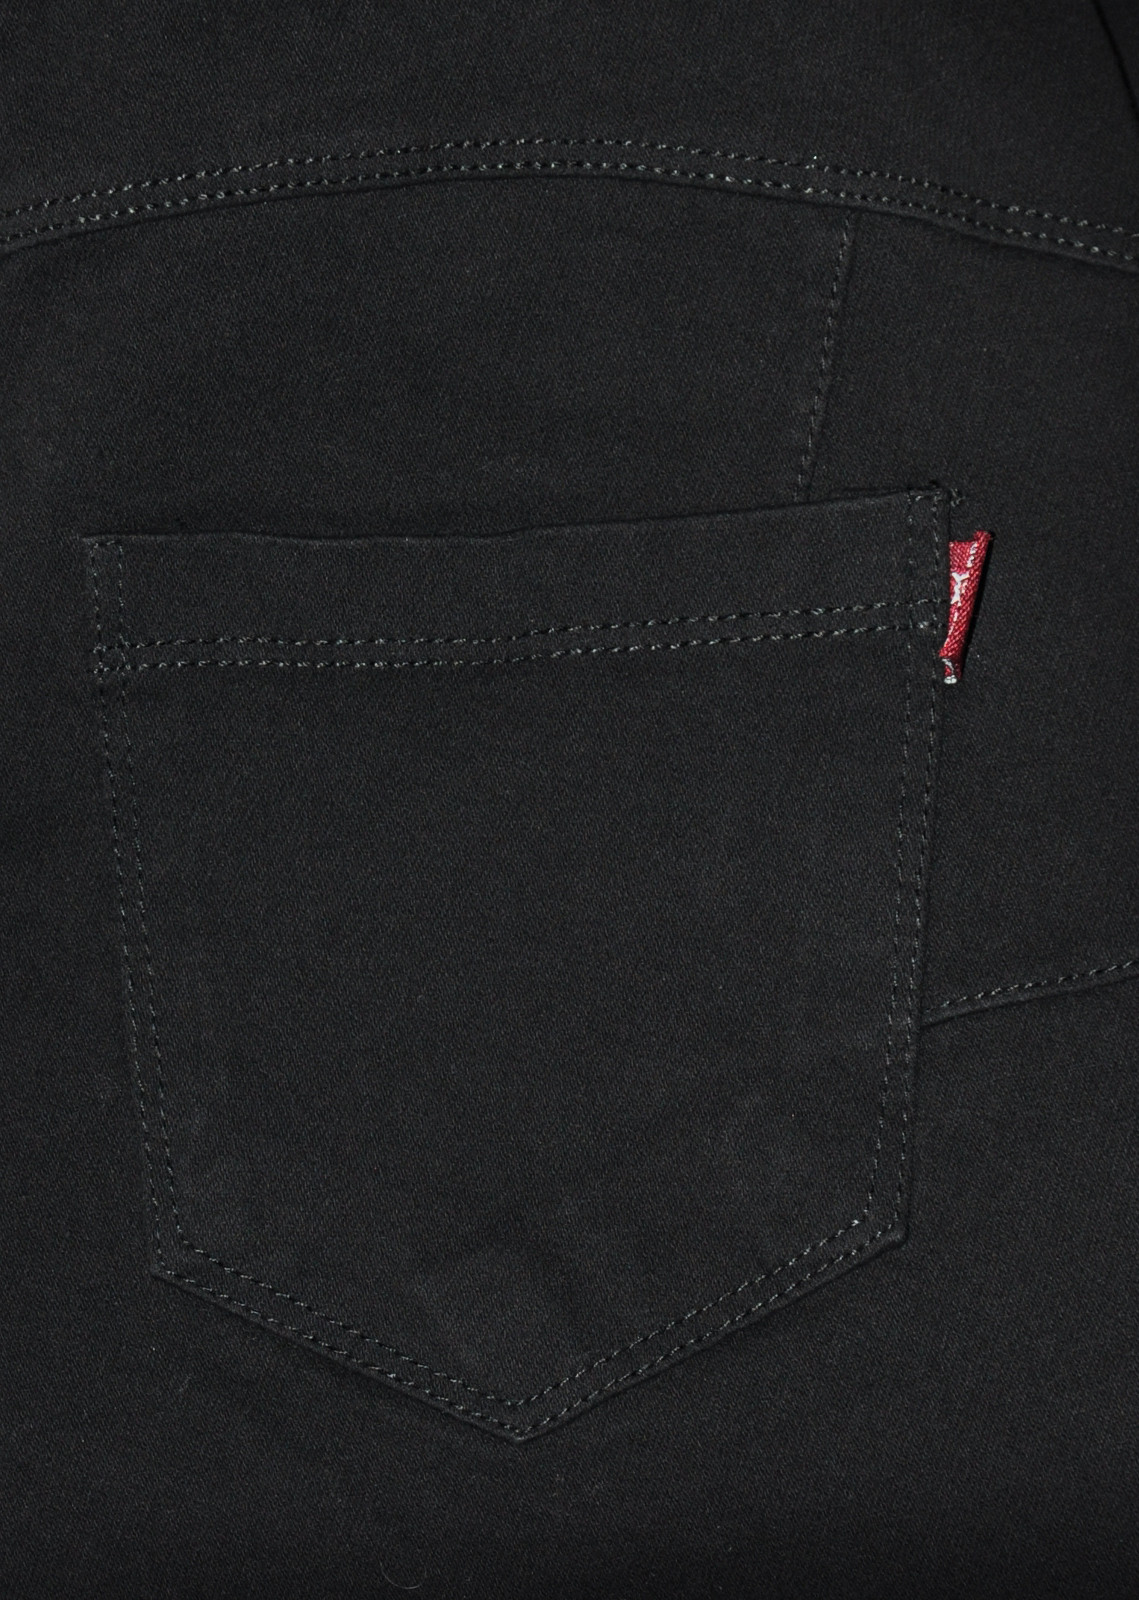 Dámské kalhoty jeans S model 7063093 - Gatta